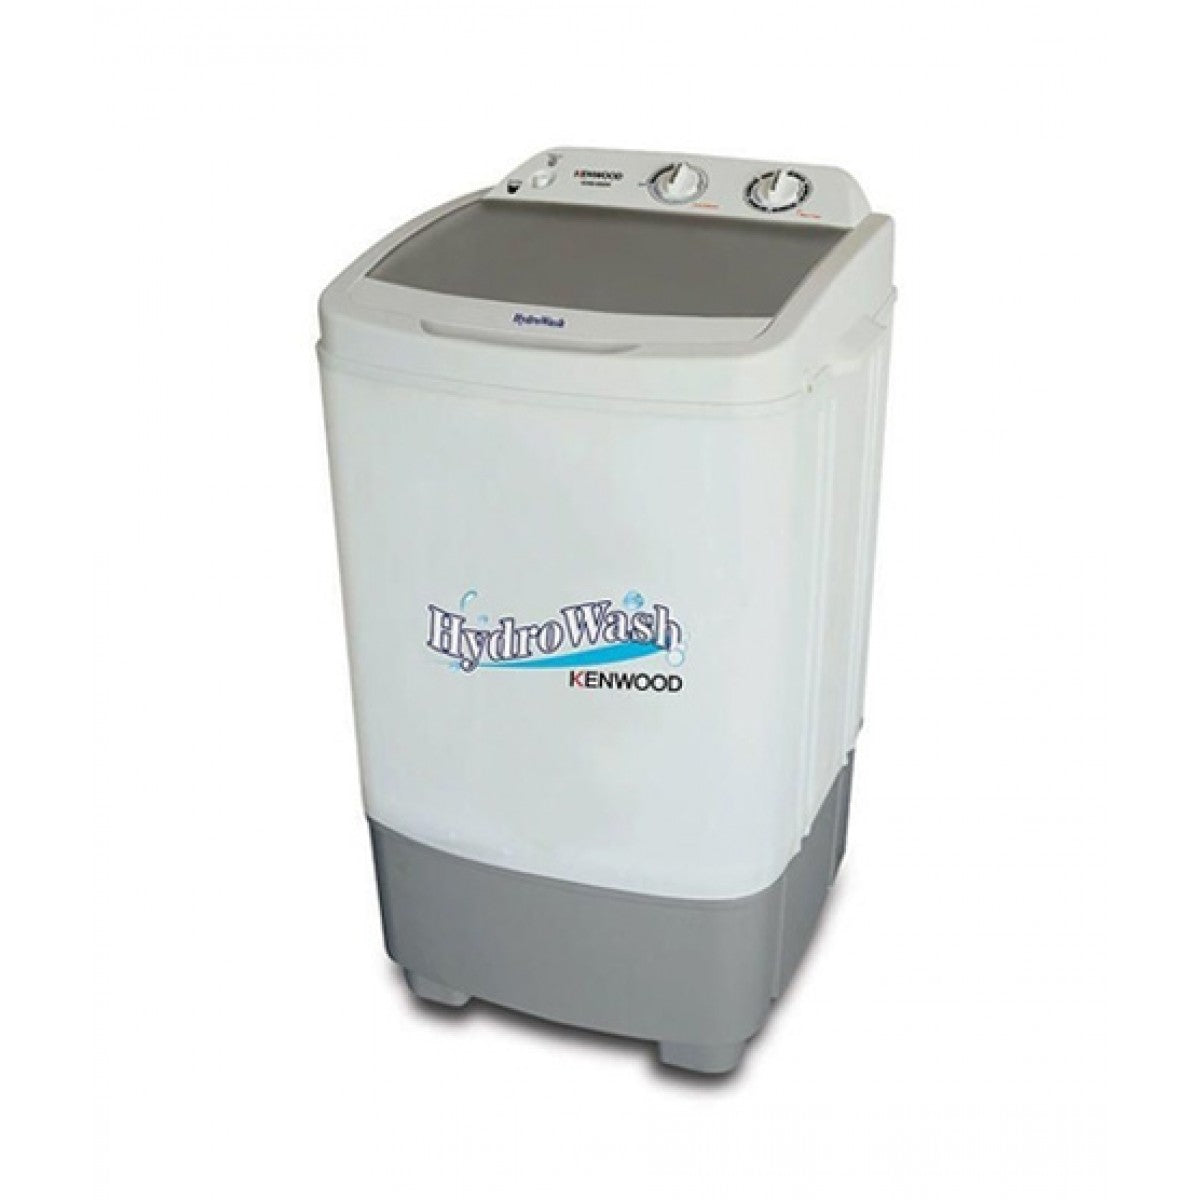 Kenwood Washing Machine Single Tub Washer - KWM-899W